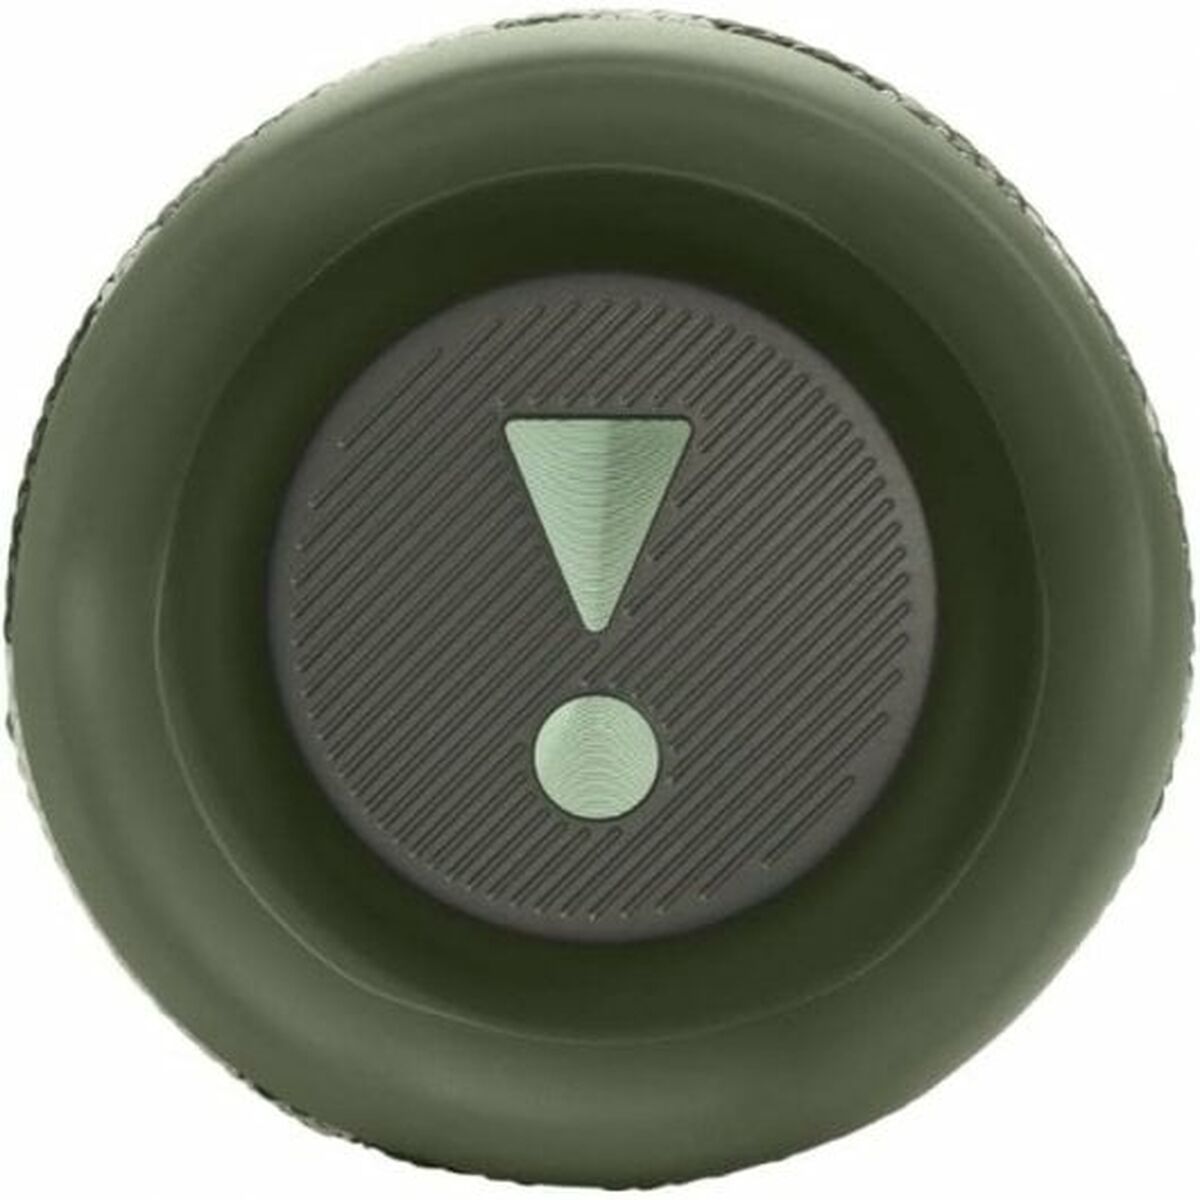 Kaufe Tragbare Bluetooth-Lautsprecher JBL Flip 6 20 W grün bei AWK Flagship um € 194.00